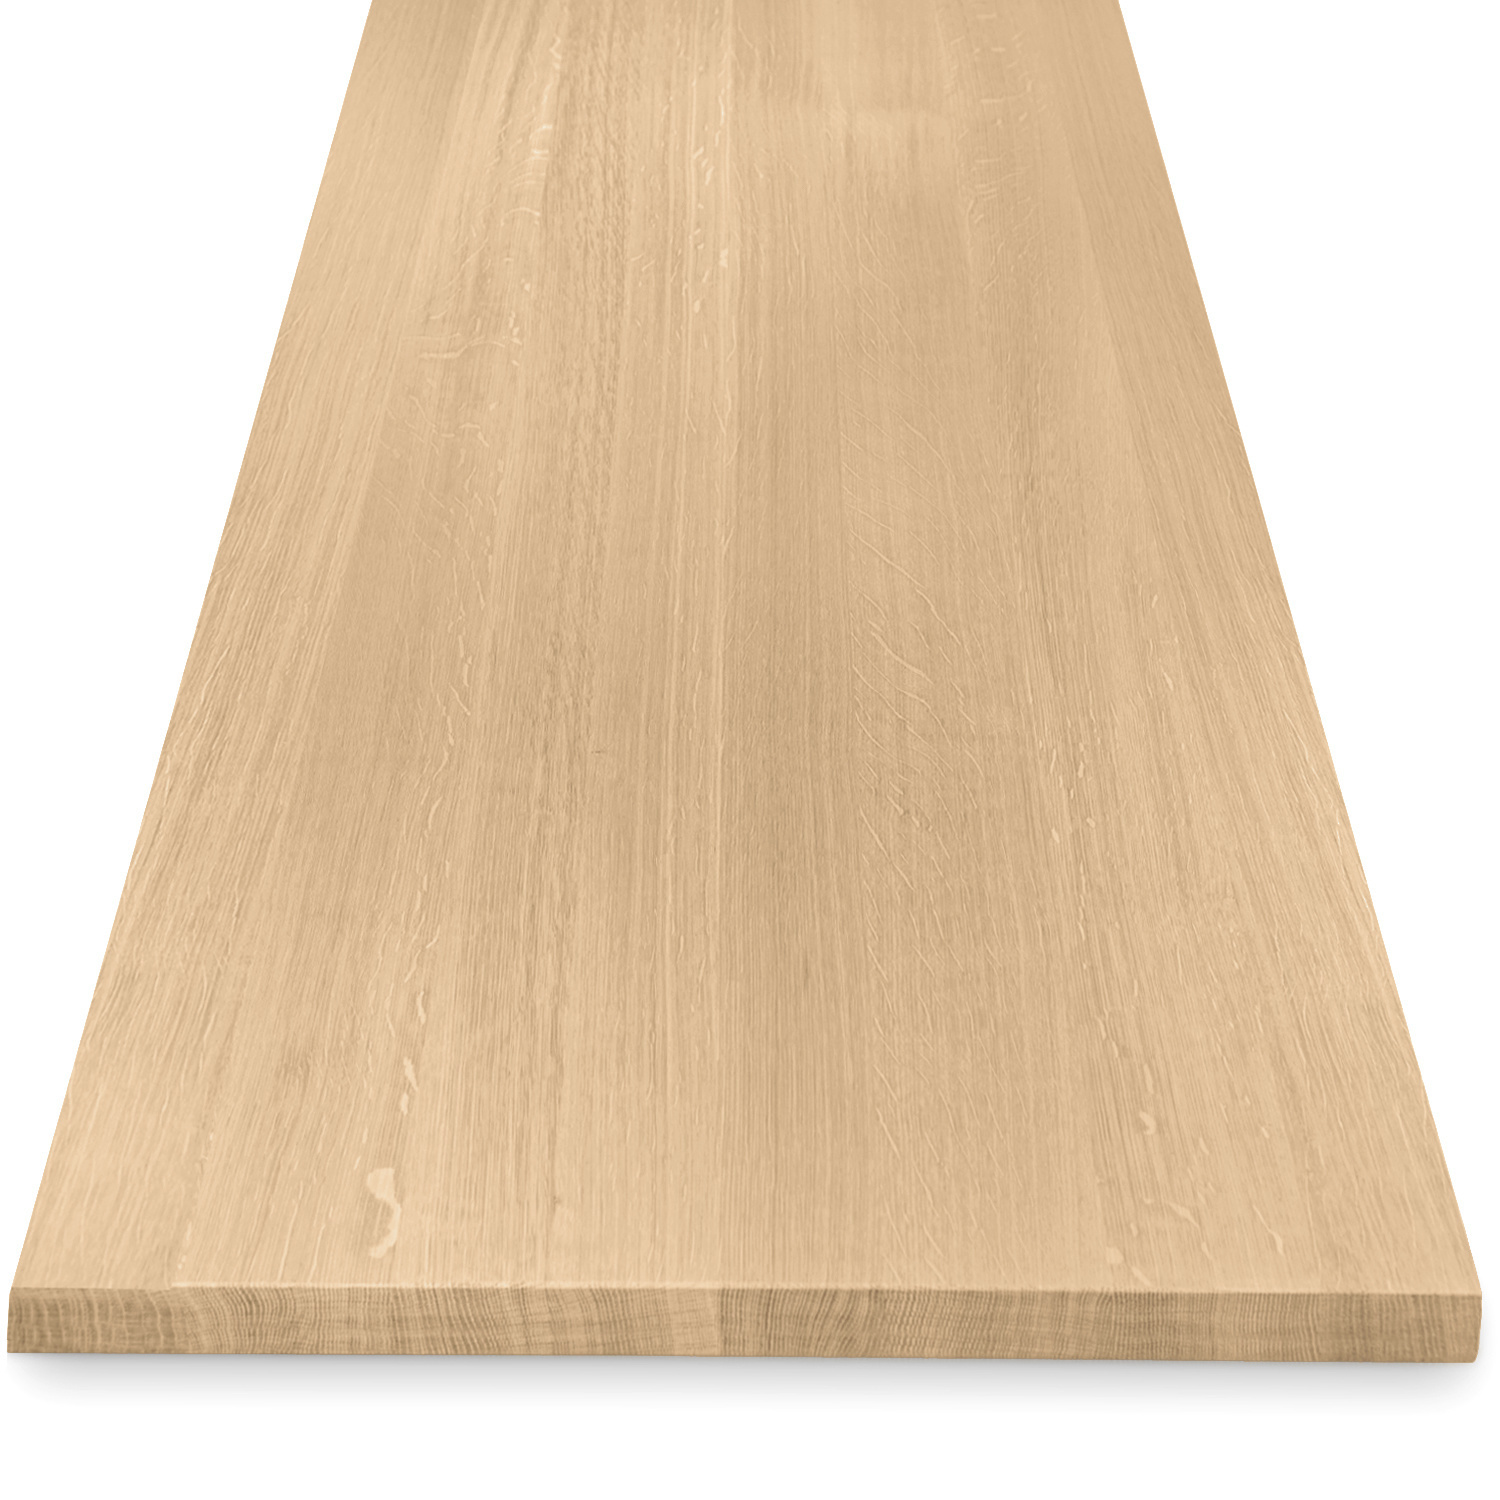  Tischplatte Eiche - 4 cm dick (1-Schicht) - Breite Lamellen (10 - 12 cm breit) - Eichenholz A-Qualität - verleimt & künstlich getrocknet (HF 8-12%) - verschiedene Größen